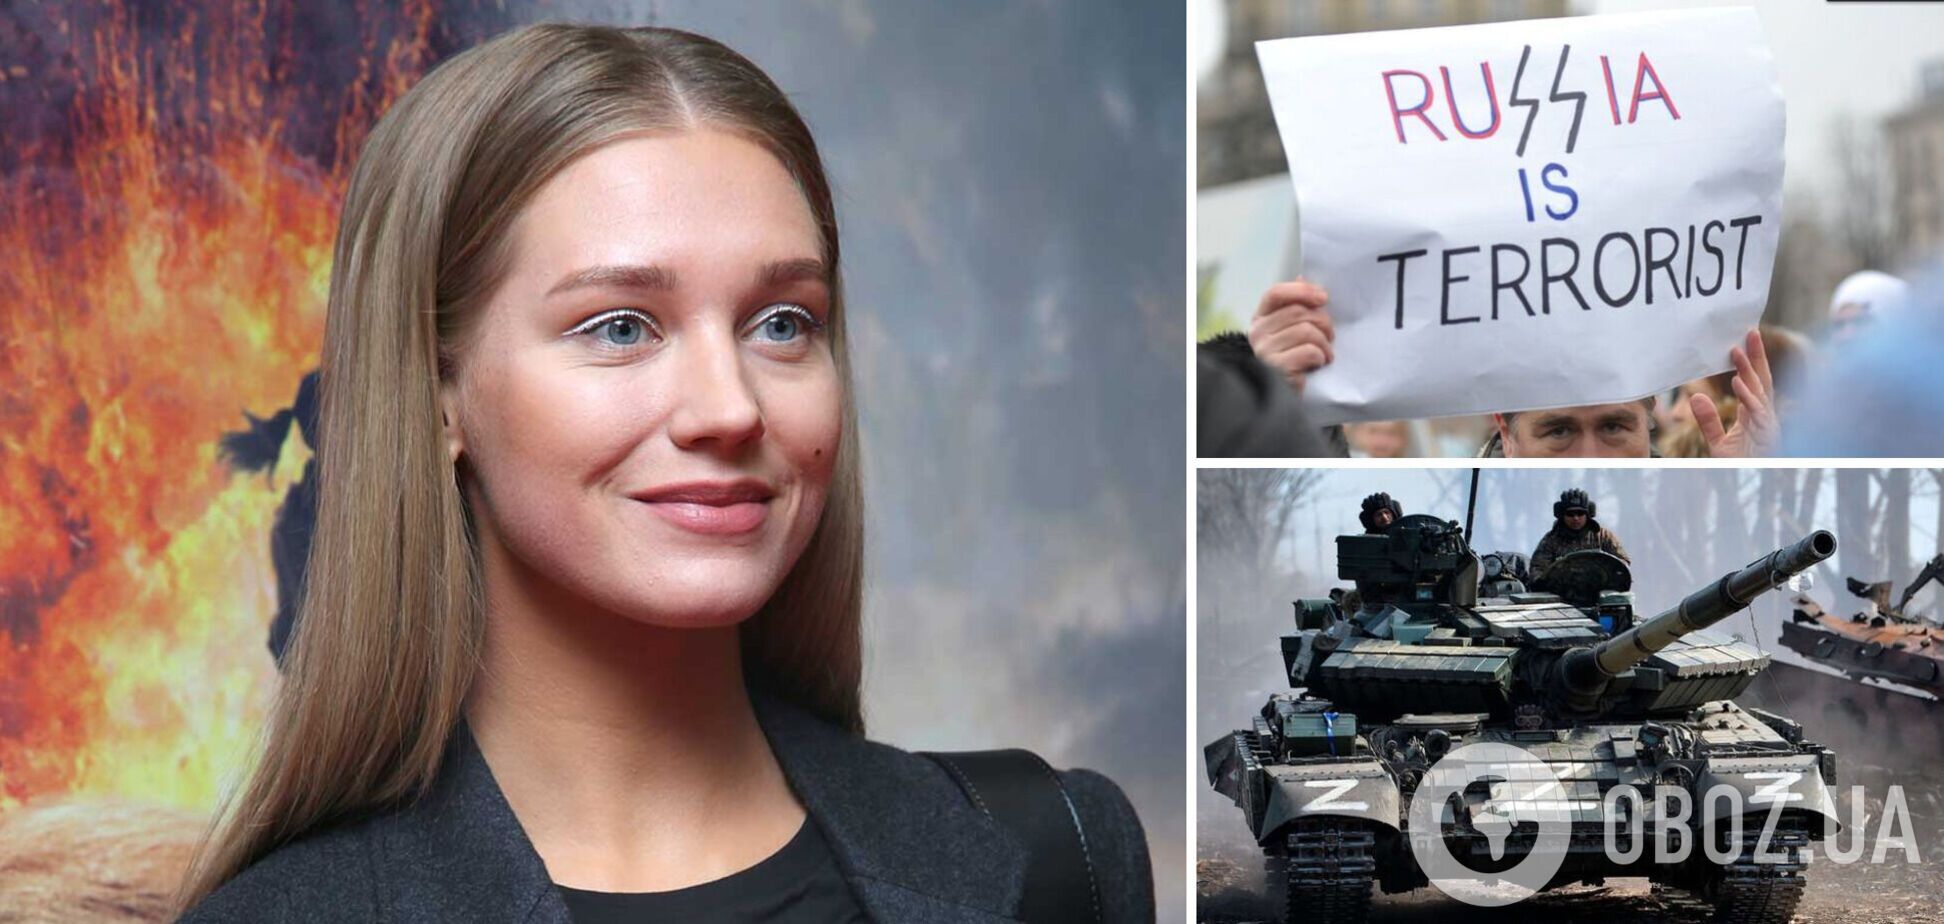 Кристина Асмус резко 'переобулась' и избежала наказания за 'дискредитацию российской армии'